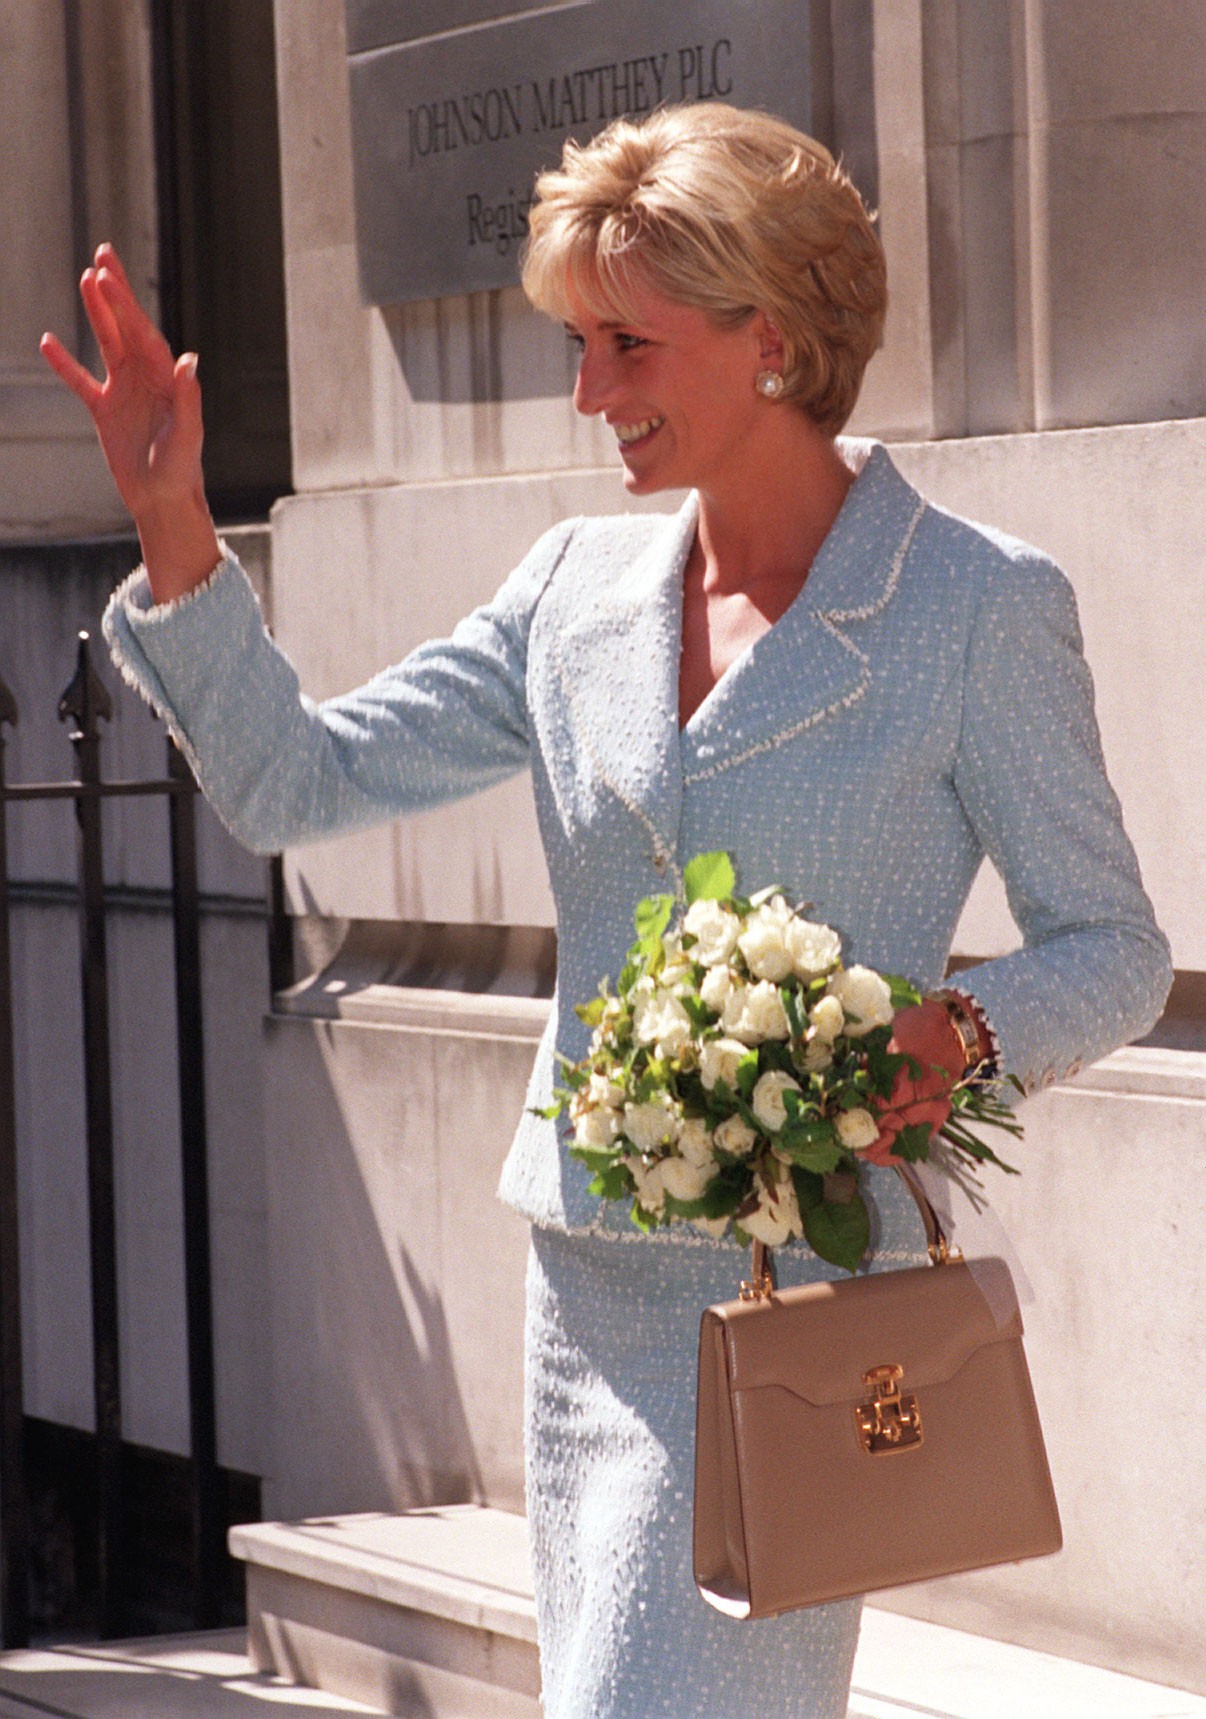 A Princesa Diana (1961-1997) em um evento em Londres em abril de 1997 com o relógio hoje pertencente a Meghan Markle, esposa do Príncipe Harry (Foto: Getty Images)